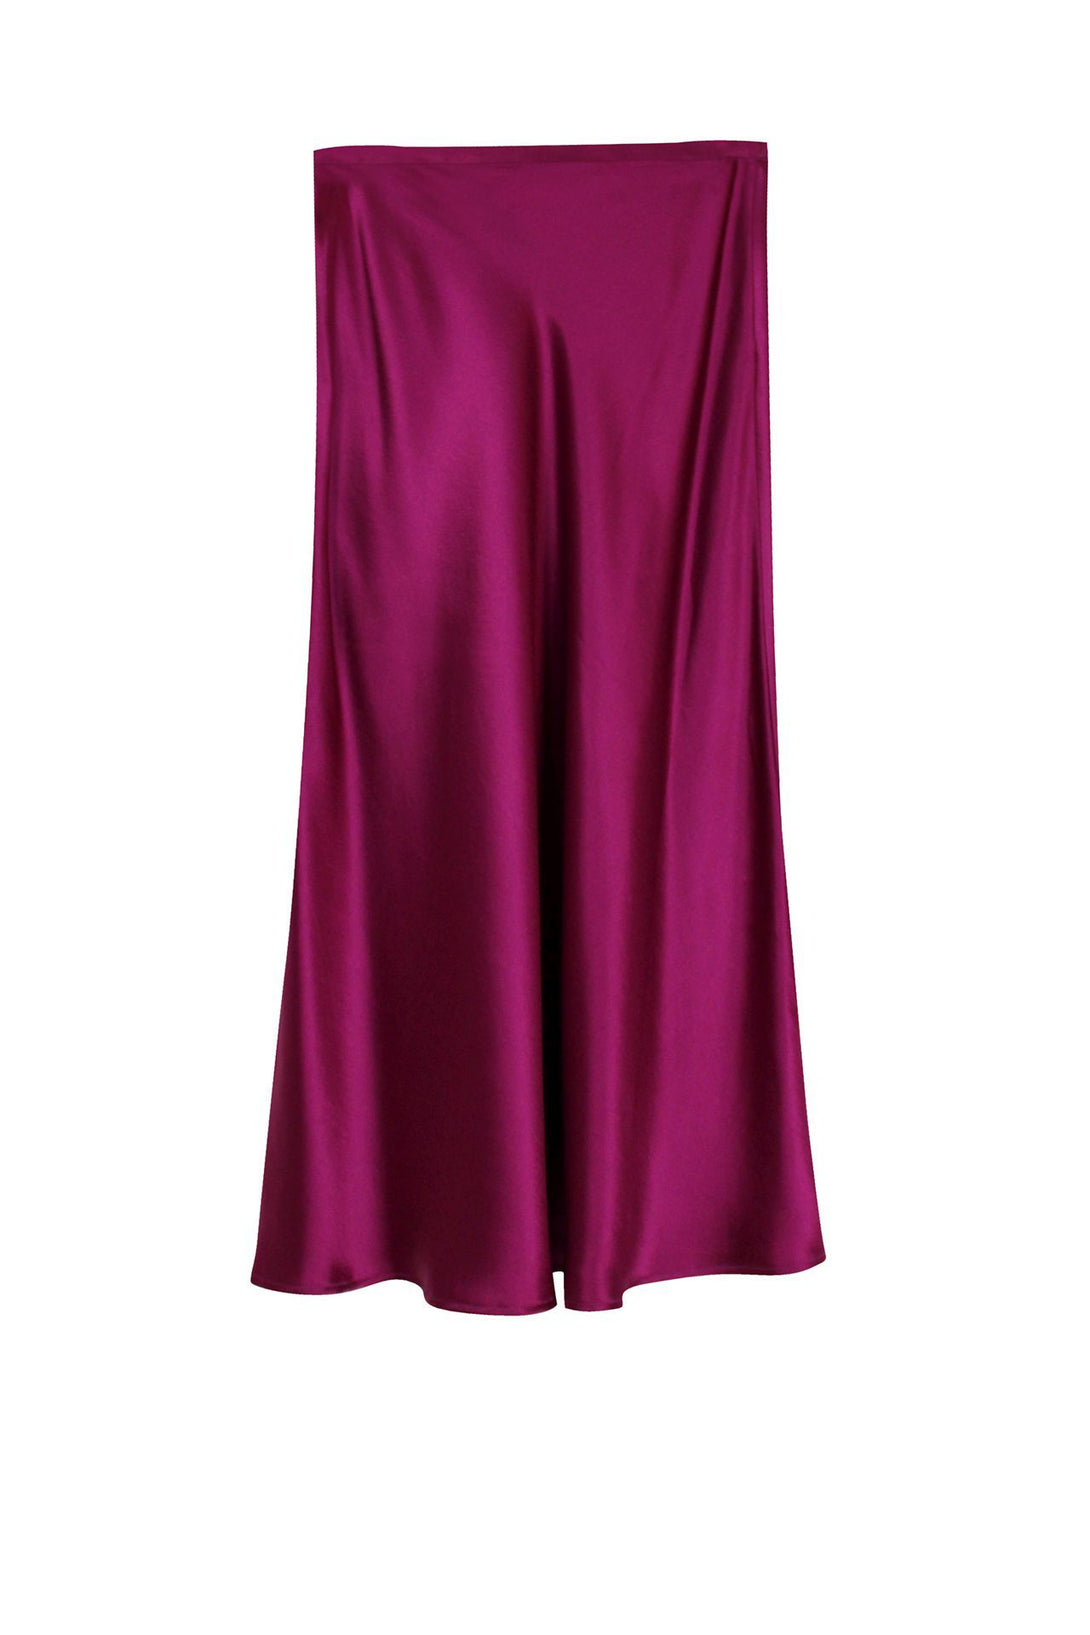 Designer-Skirt-In-Purple-For-Womens-By-Kyle-Richard